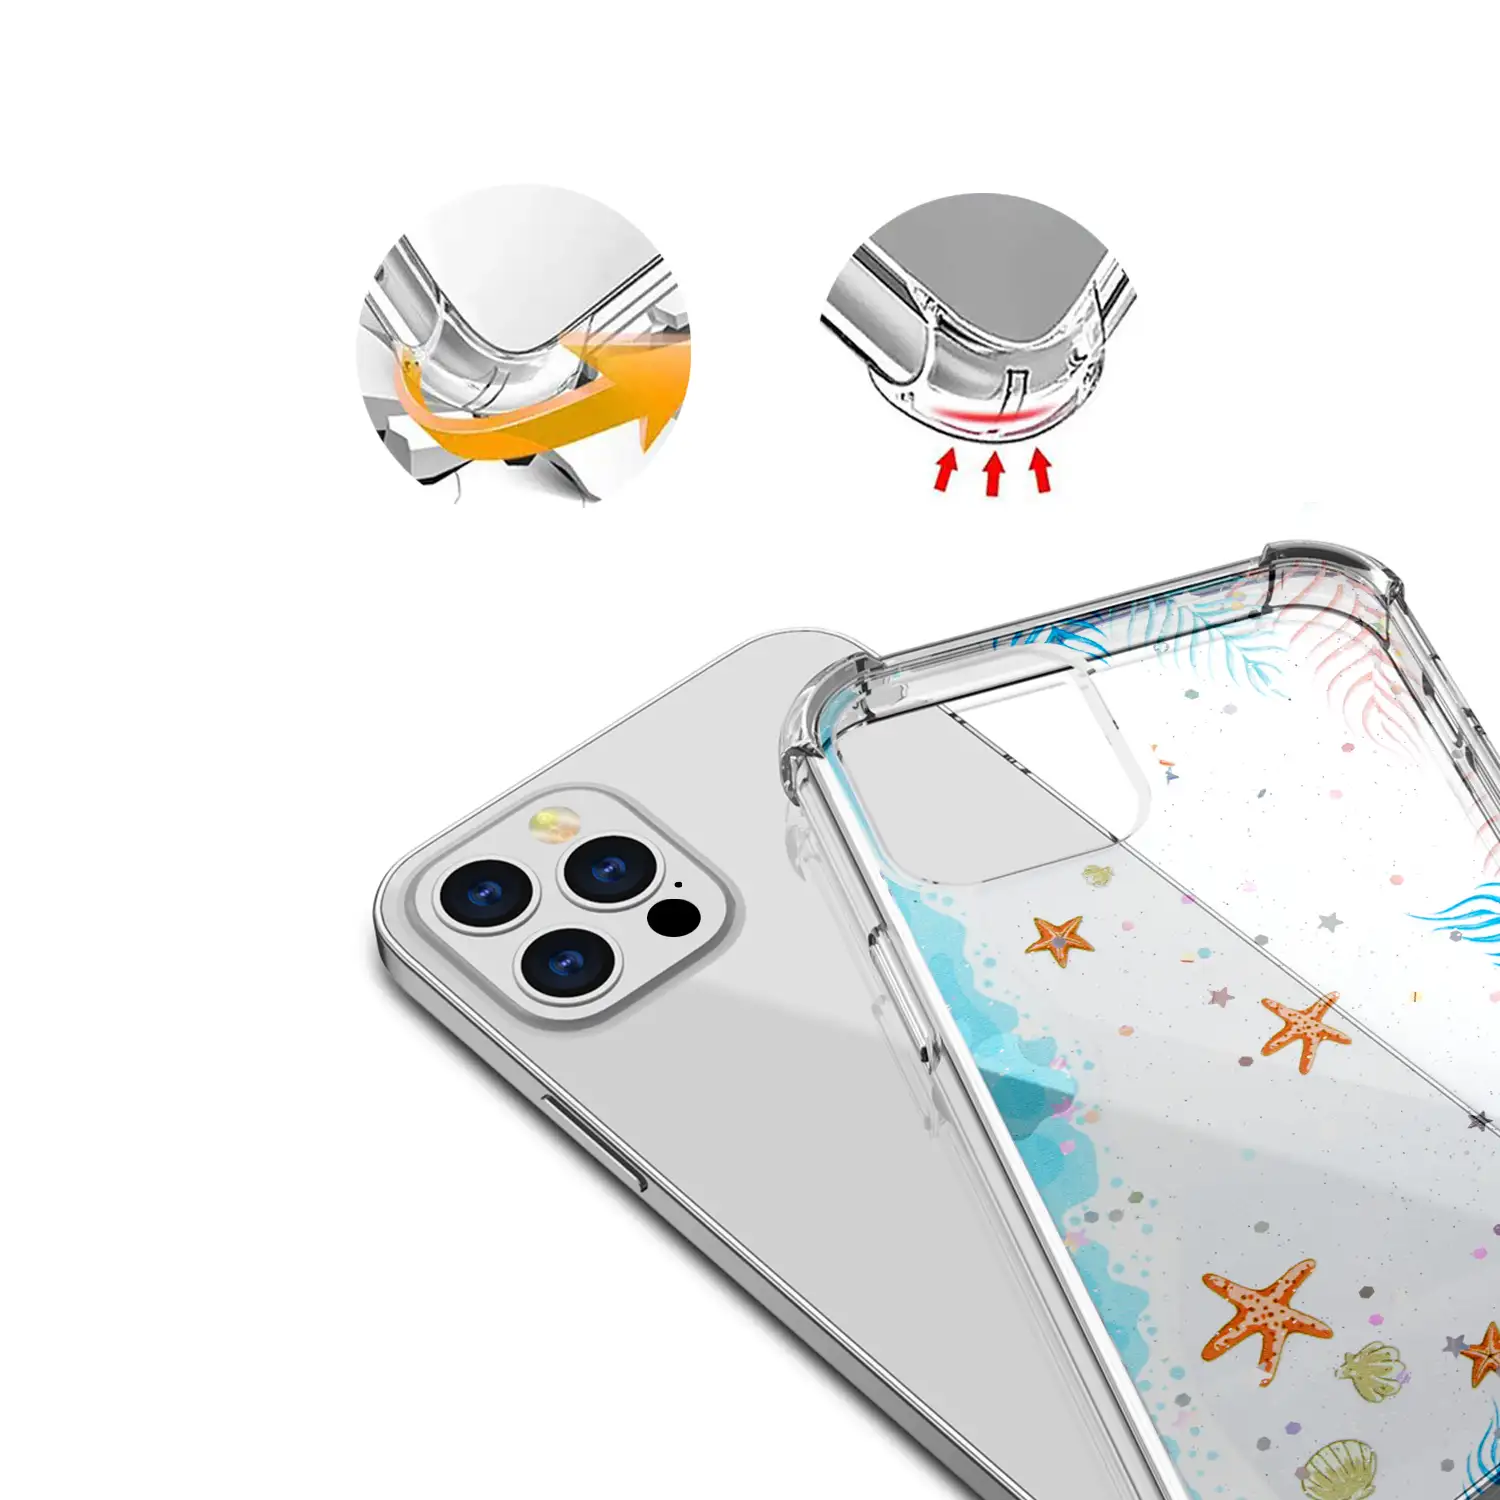 	Carcasa de TPU de alta protección con diseño estrellas de mar para iPhone 12 Pro Max